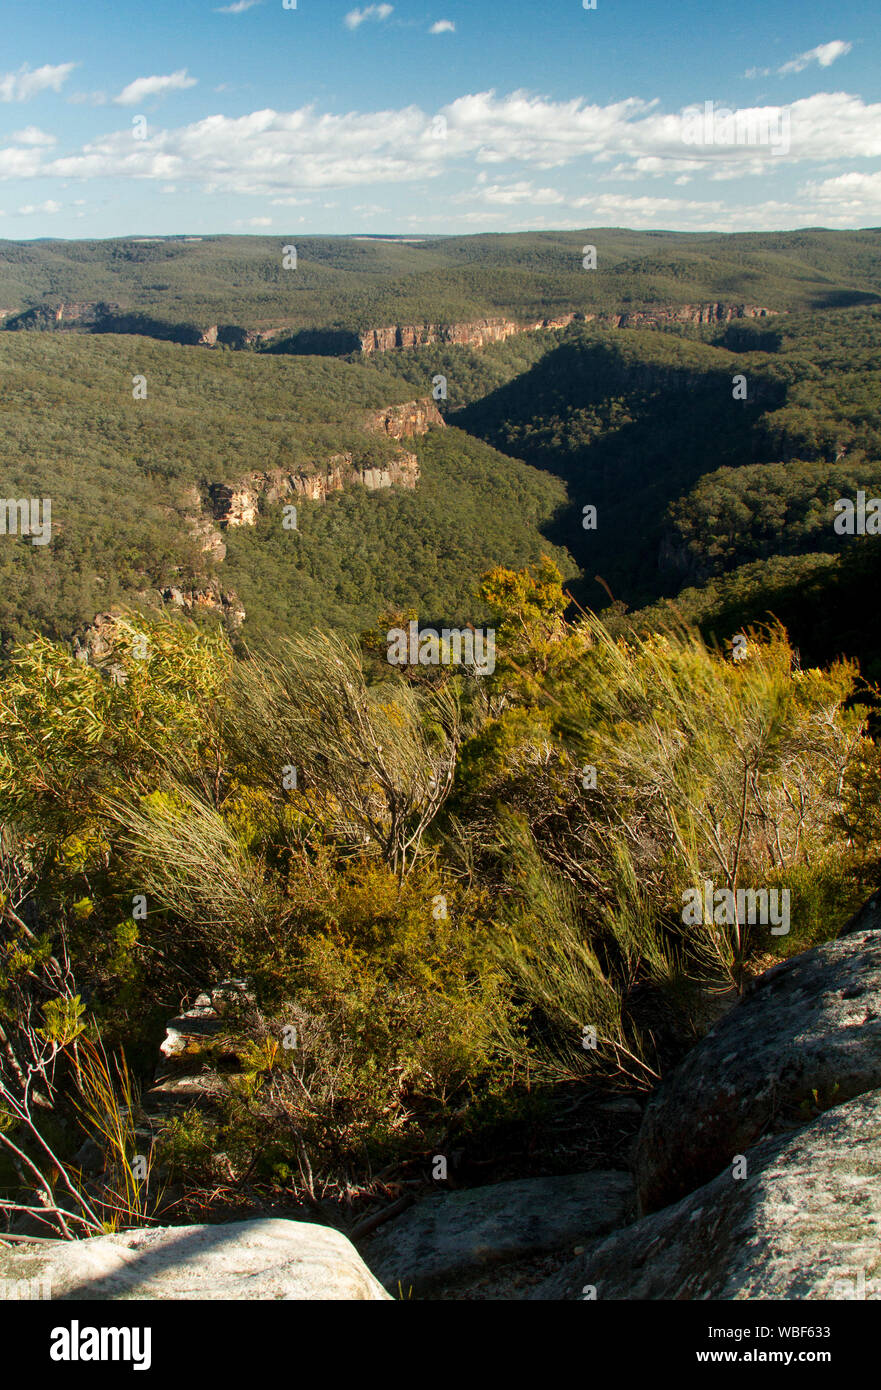 Atemberaubende Aussicht auf die Landschaft von bewaldeten Hügeln der Great Dividing Range durch zerklüftete Schluchten Stretching zu fernen Horizont & blue sky durchtrennt, NSW Australien Stockfoto